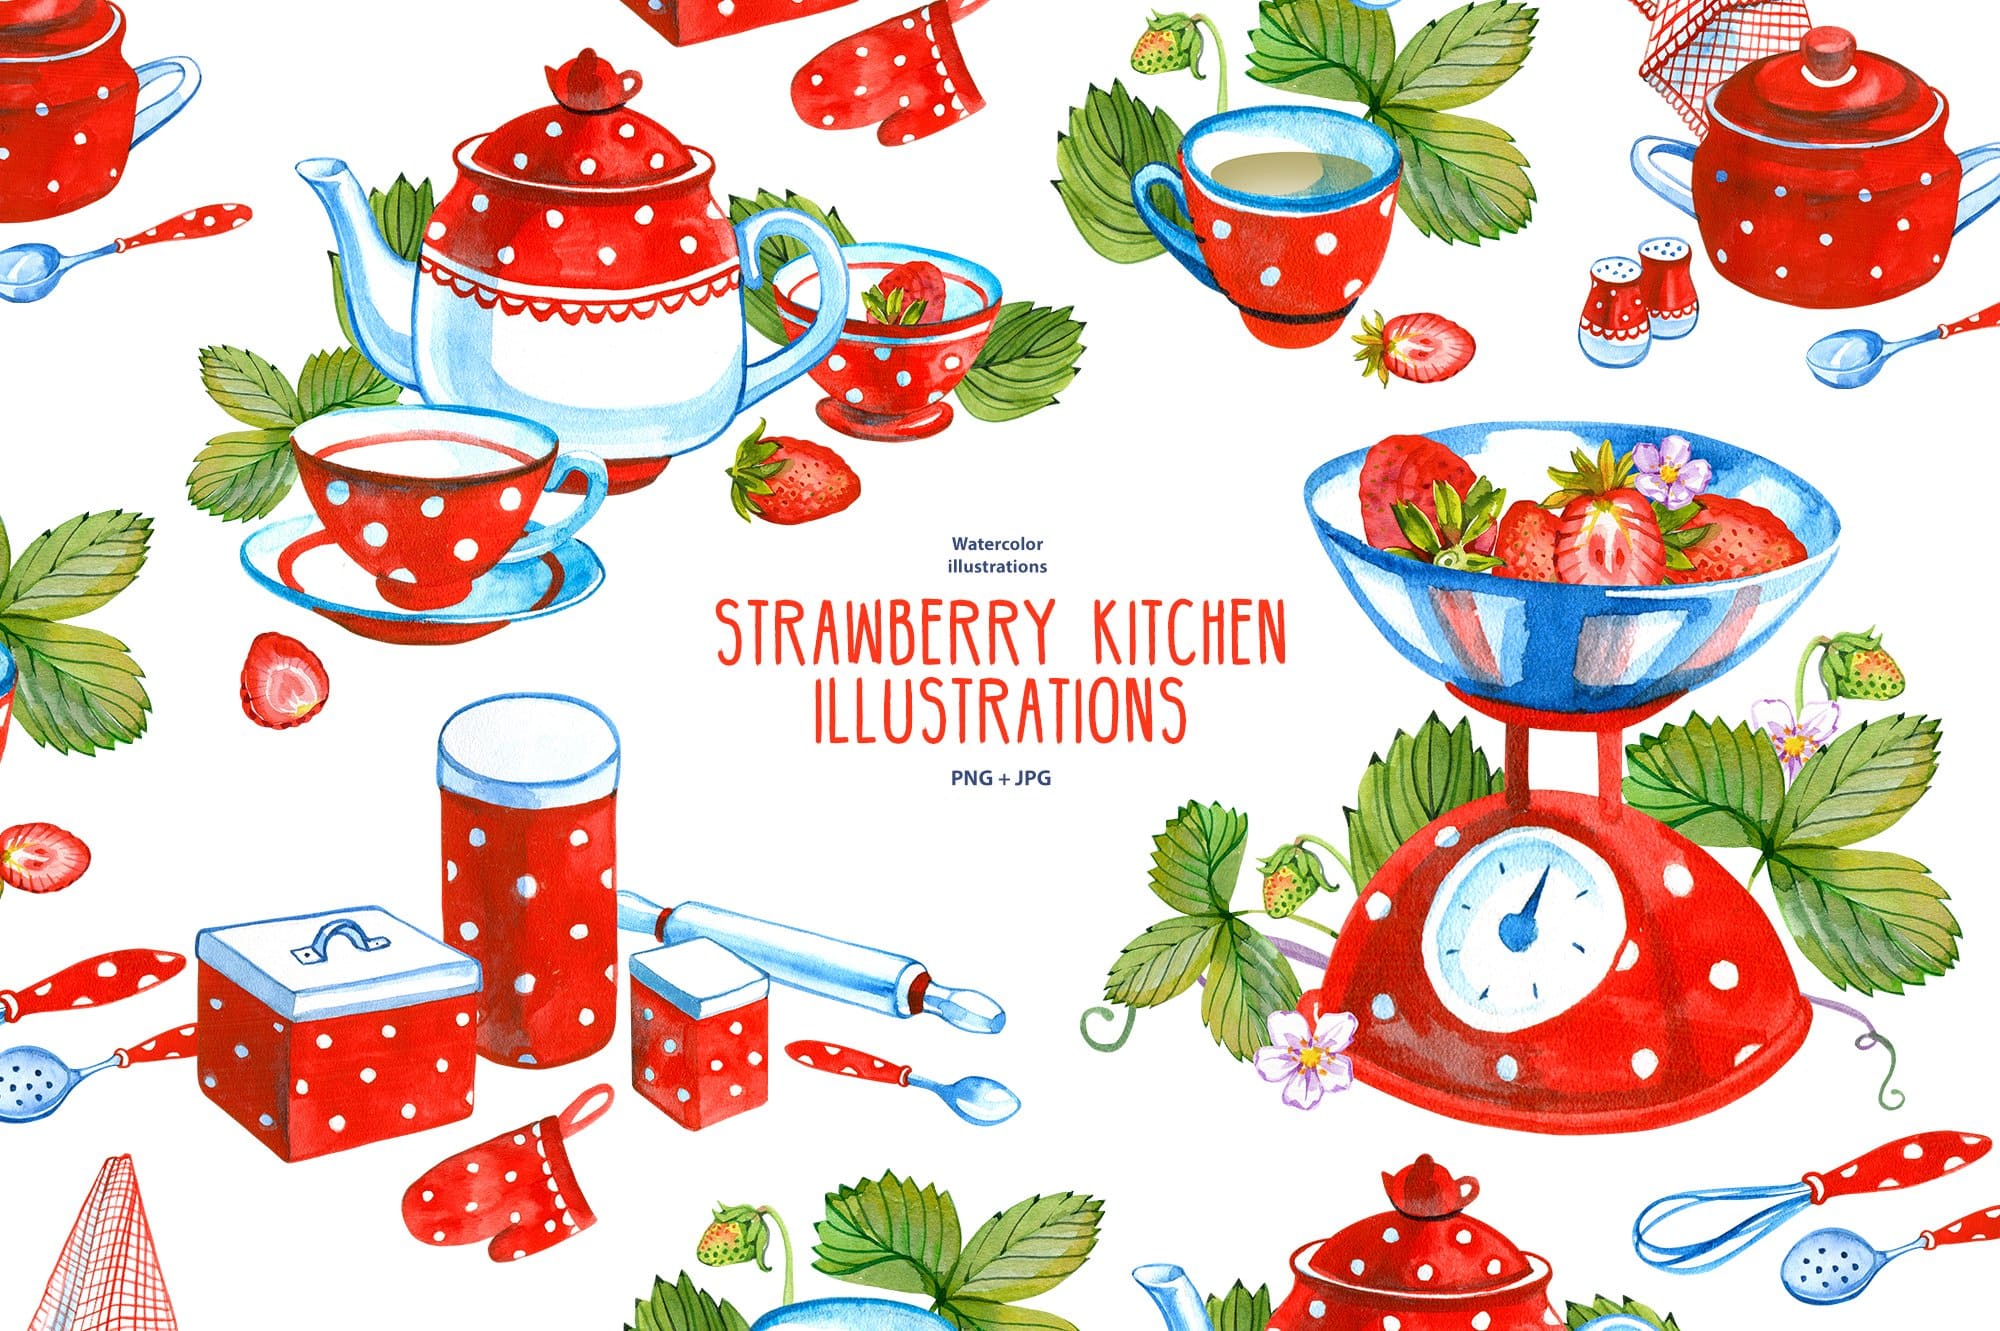 5 Strawberry Kitchen Illustrations.